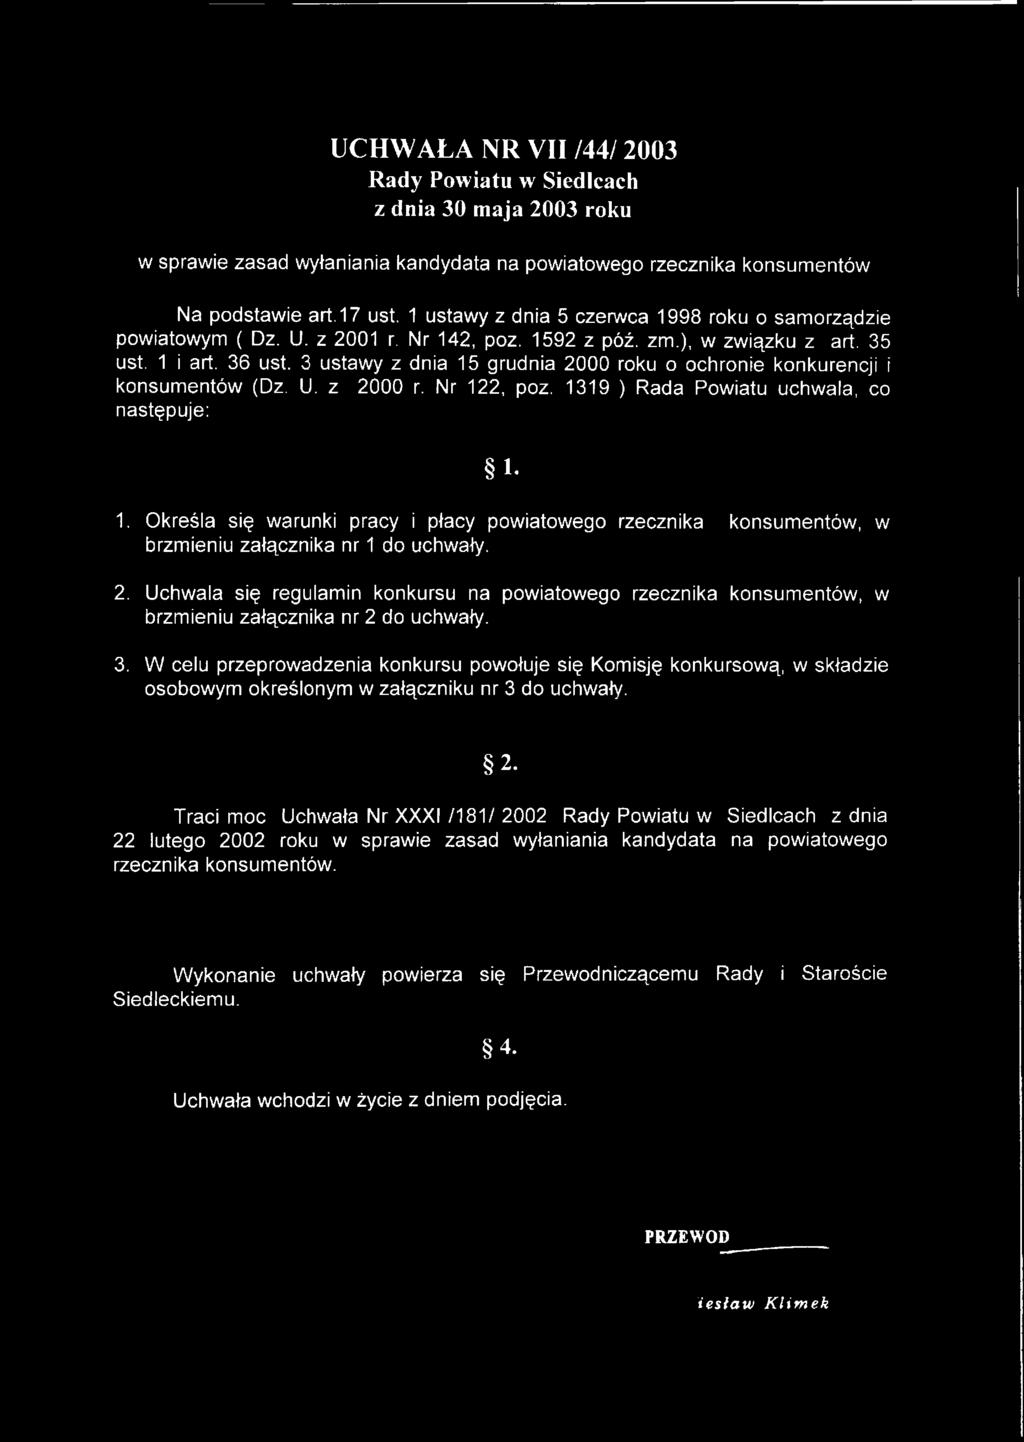 3 ustawy z dnia 15 grudnia 2000 roku o ochronie konkurencji i konsumentów (Dz. U. z 2000 r. Nr 122, poz. 1319 ) Rada Powiatu uchwala, co następuje: Ł 1.